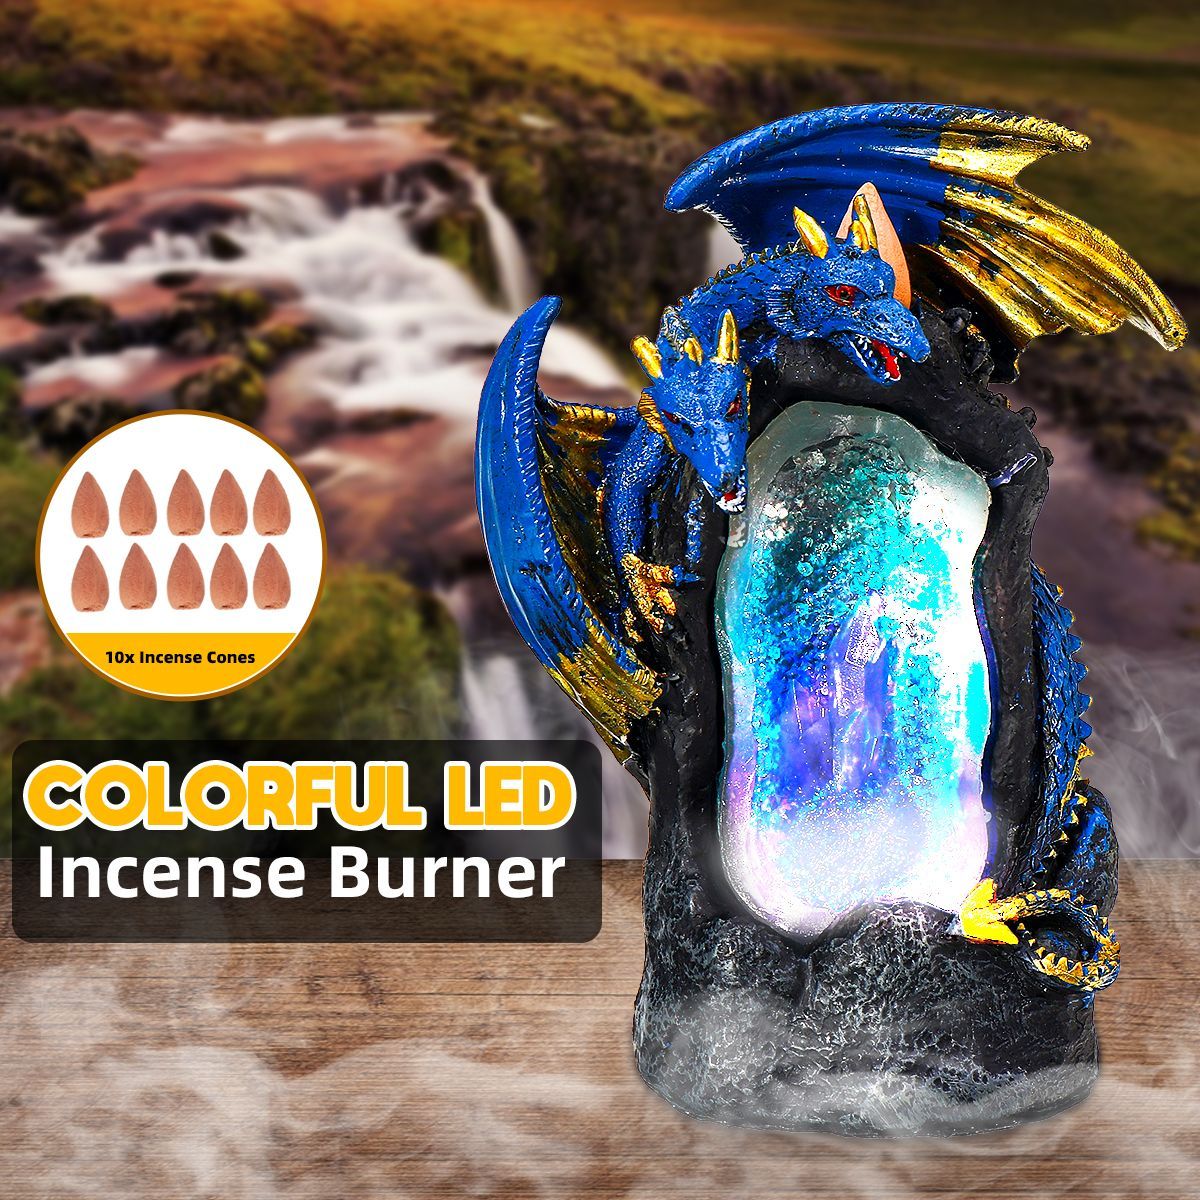 Colorful-LED-Dragon-Incense-Burner-Backflow-Censer-Holder-Buddhism-Home-Decor-1666551